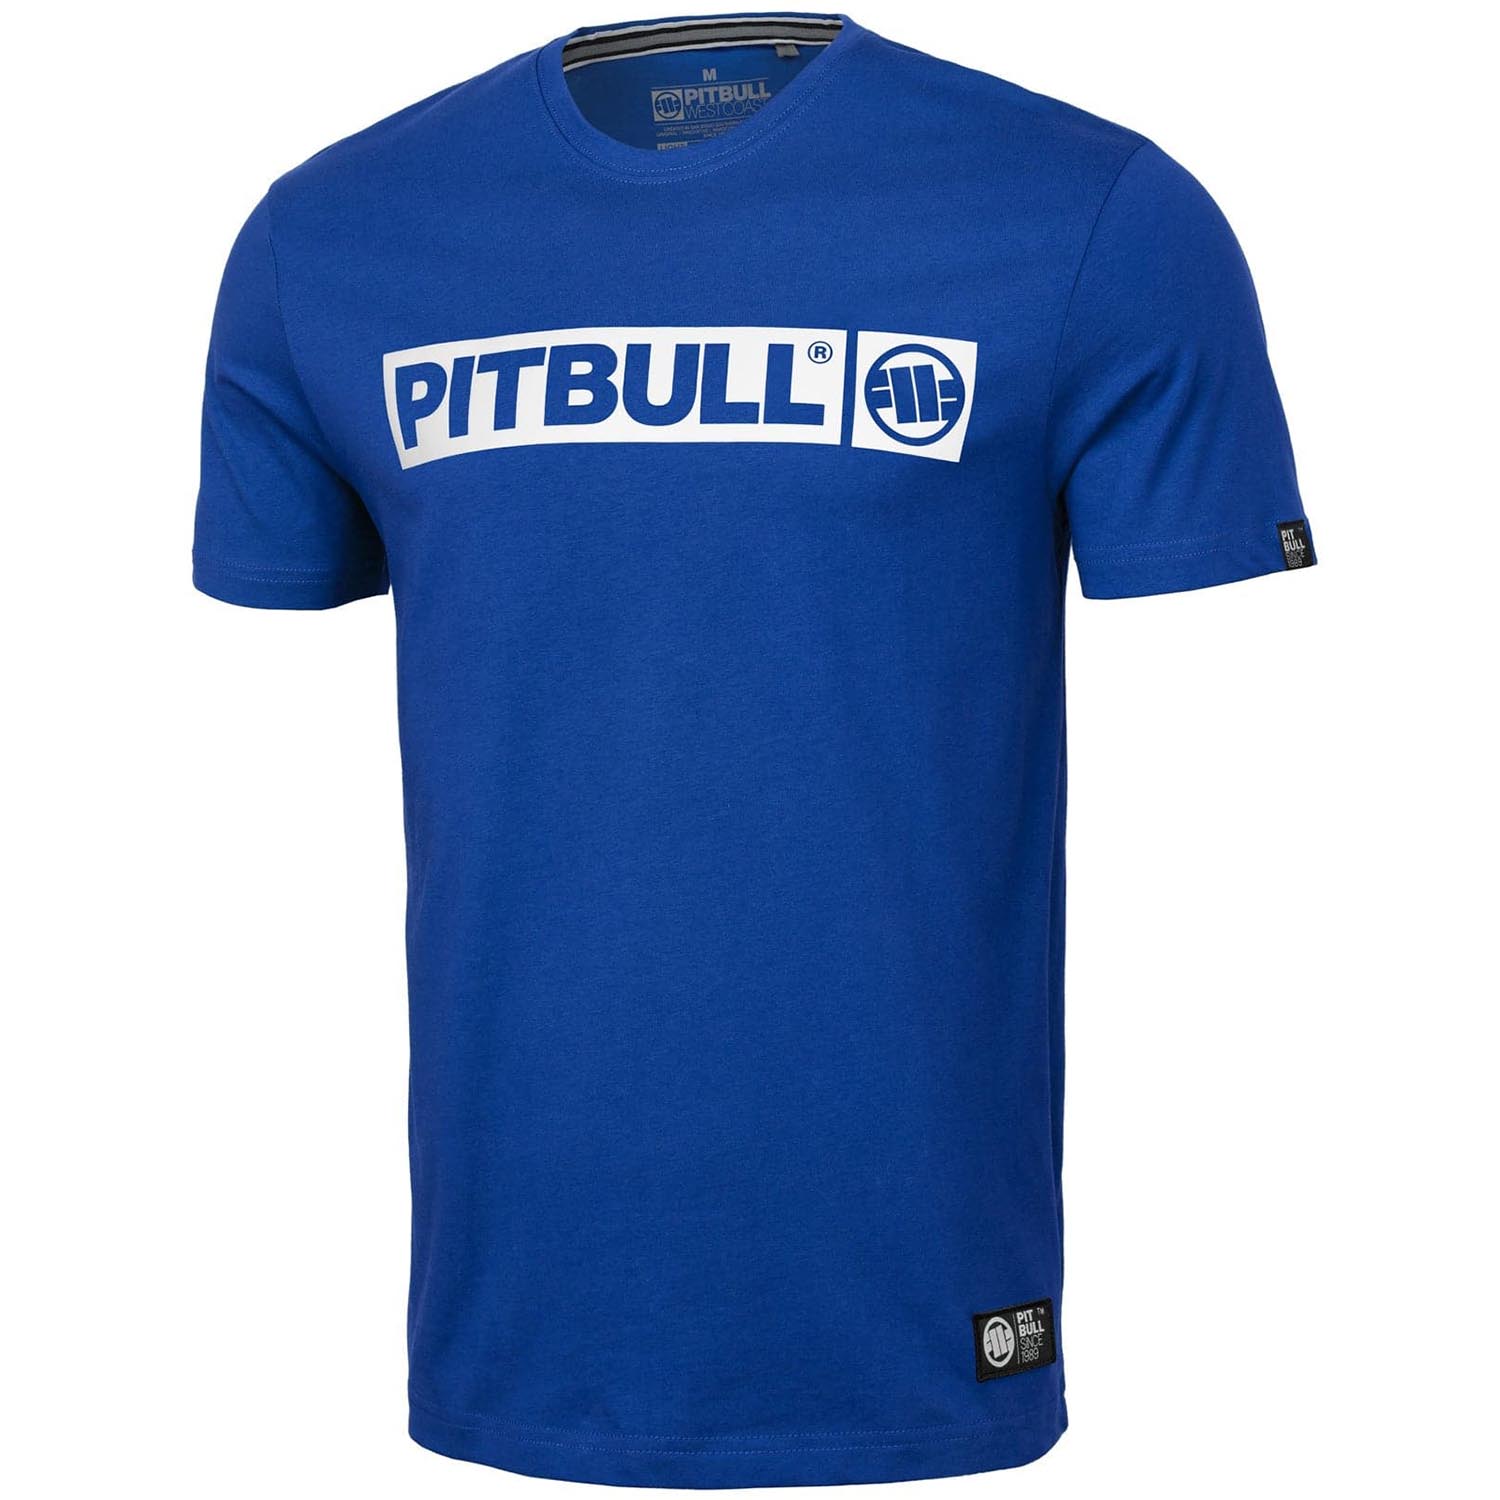 Pit Bull West Coast T-Shirt, Hilltop S70, blau